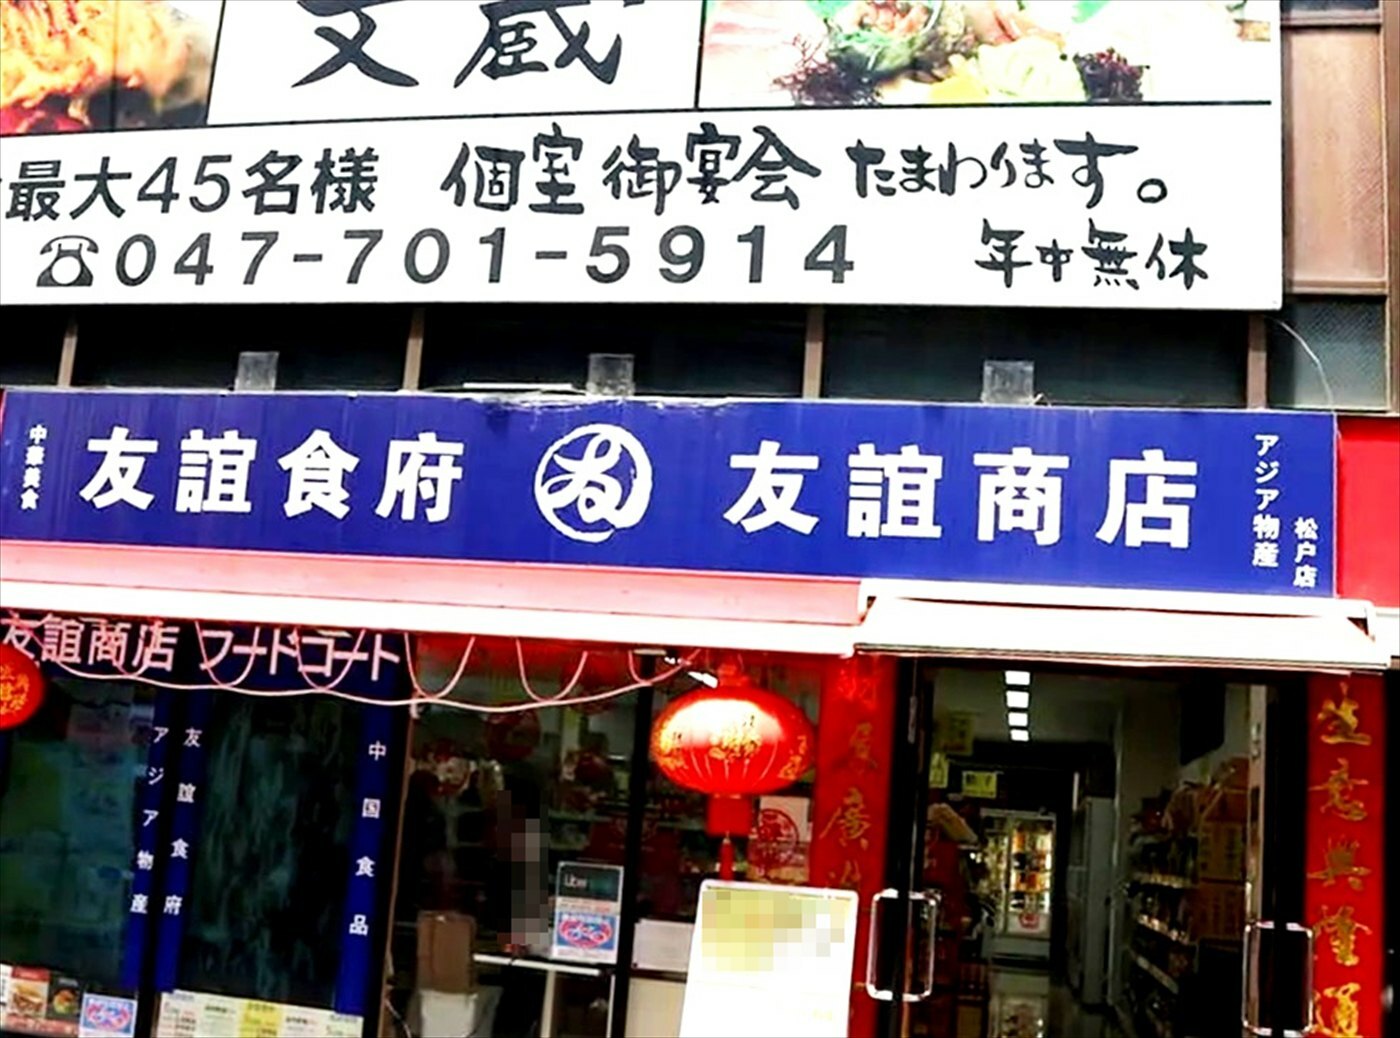 アジア物産 友誼商店